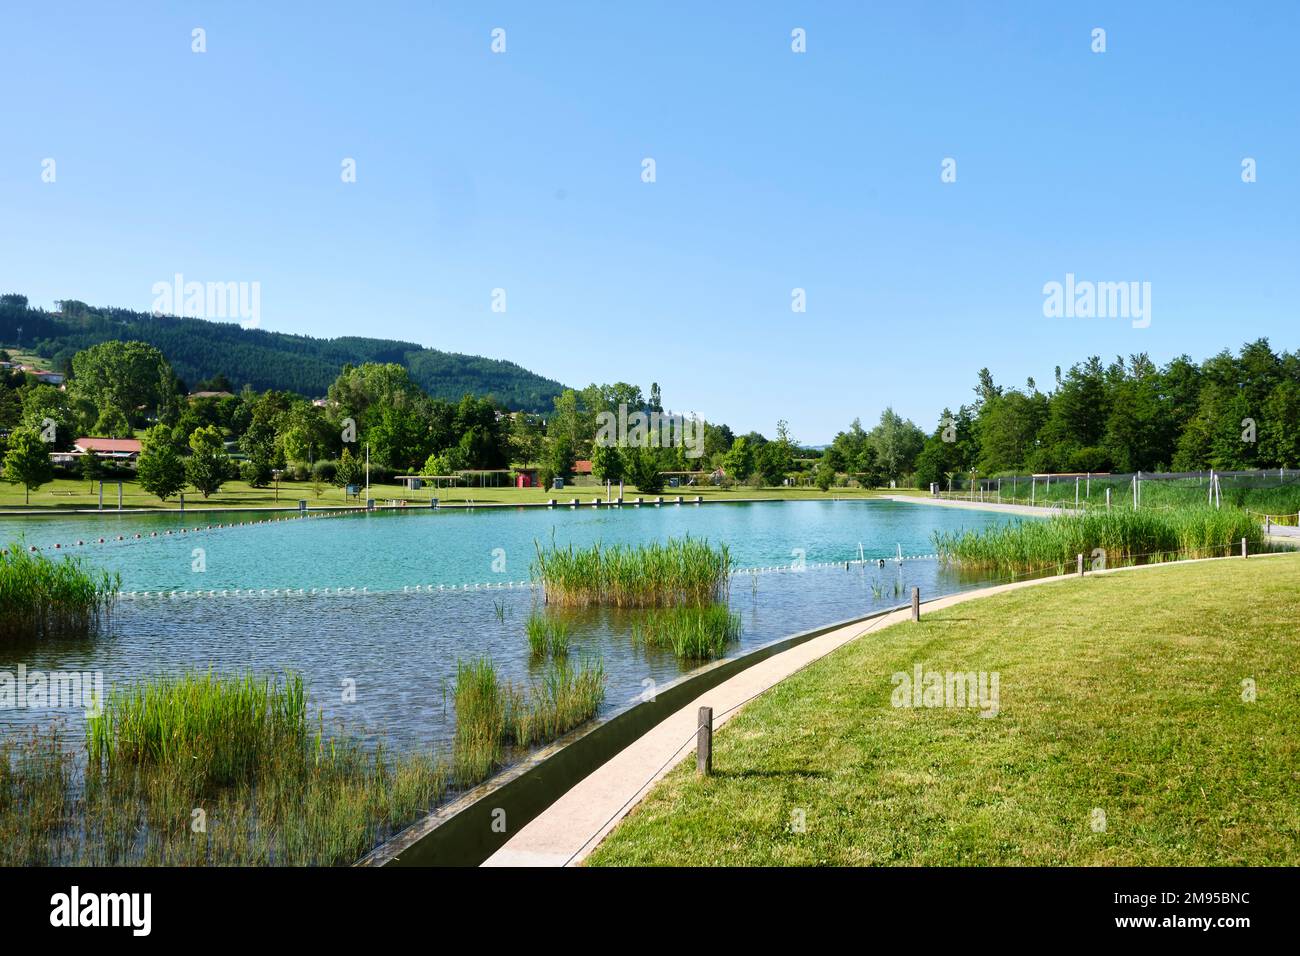 Cublize (Francia centro-orientale): lago "lac des sapins", parco ricreativo con zona nuoto sorvegliata. Sentiero sulle rive del lago e la foresta i Foto Stock